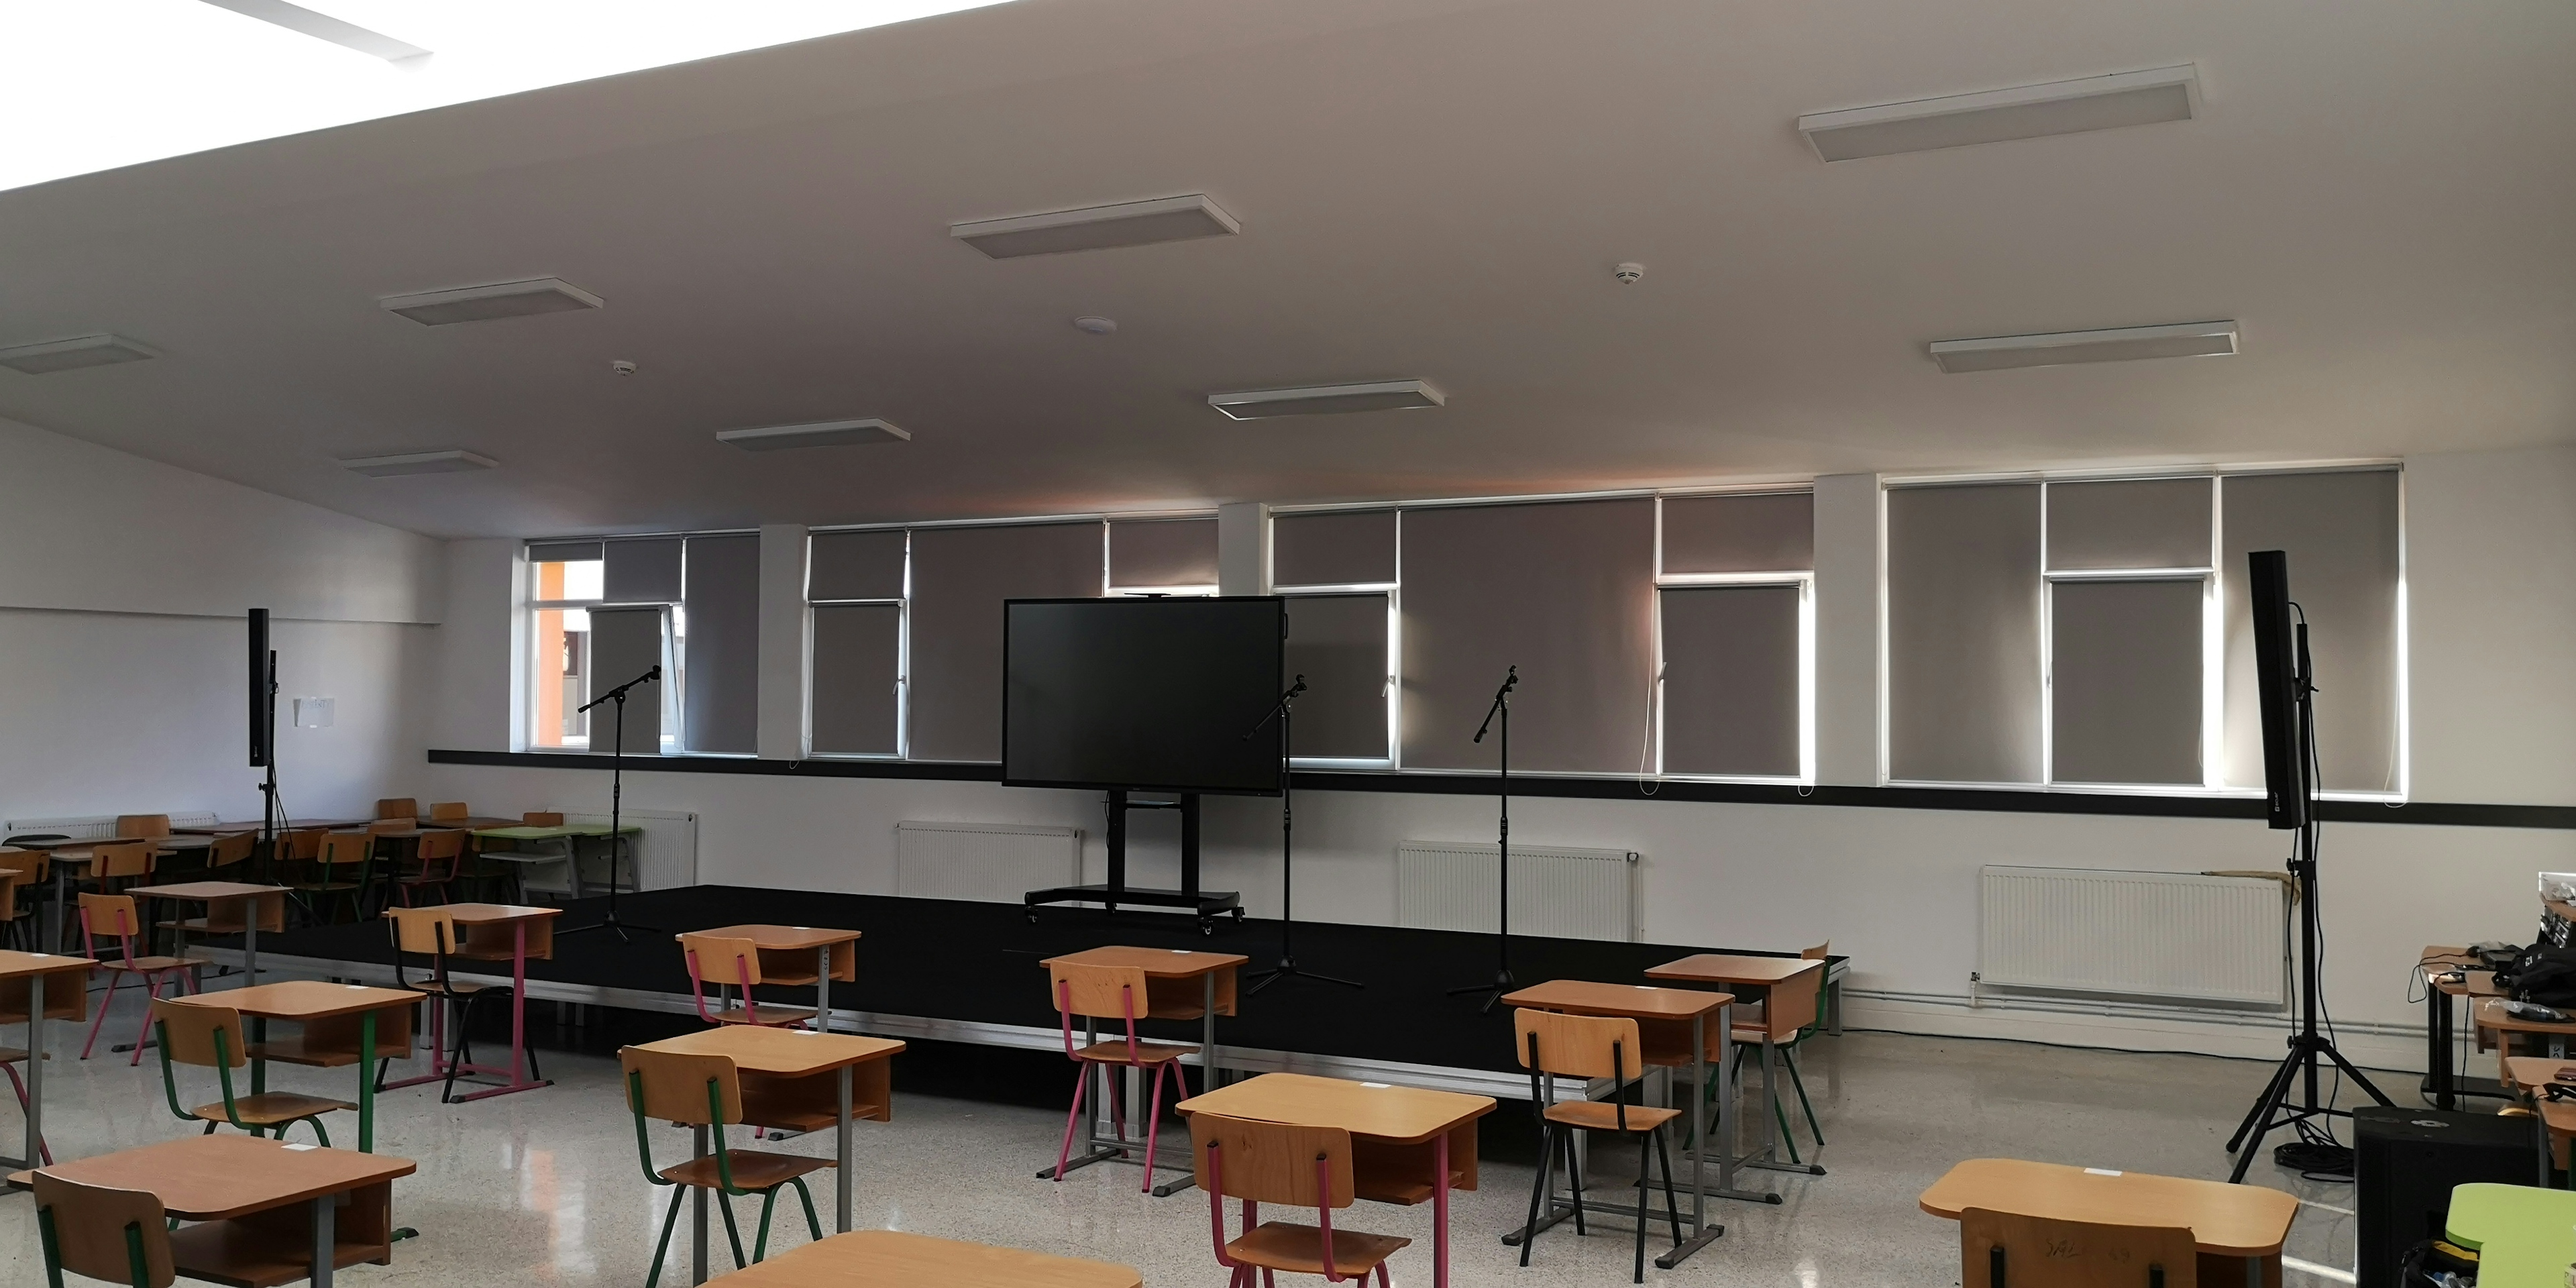 escuela nacional george cosbuc sistema de audio ecler